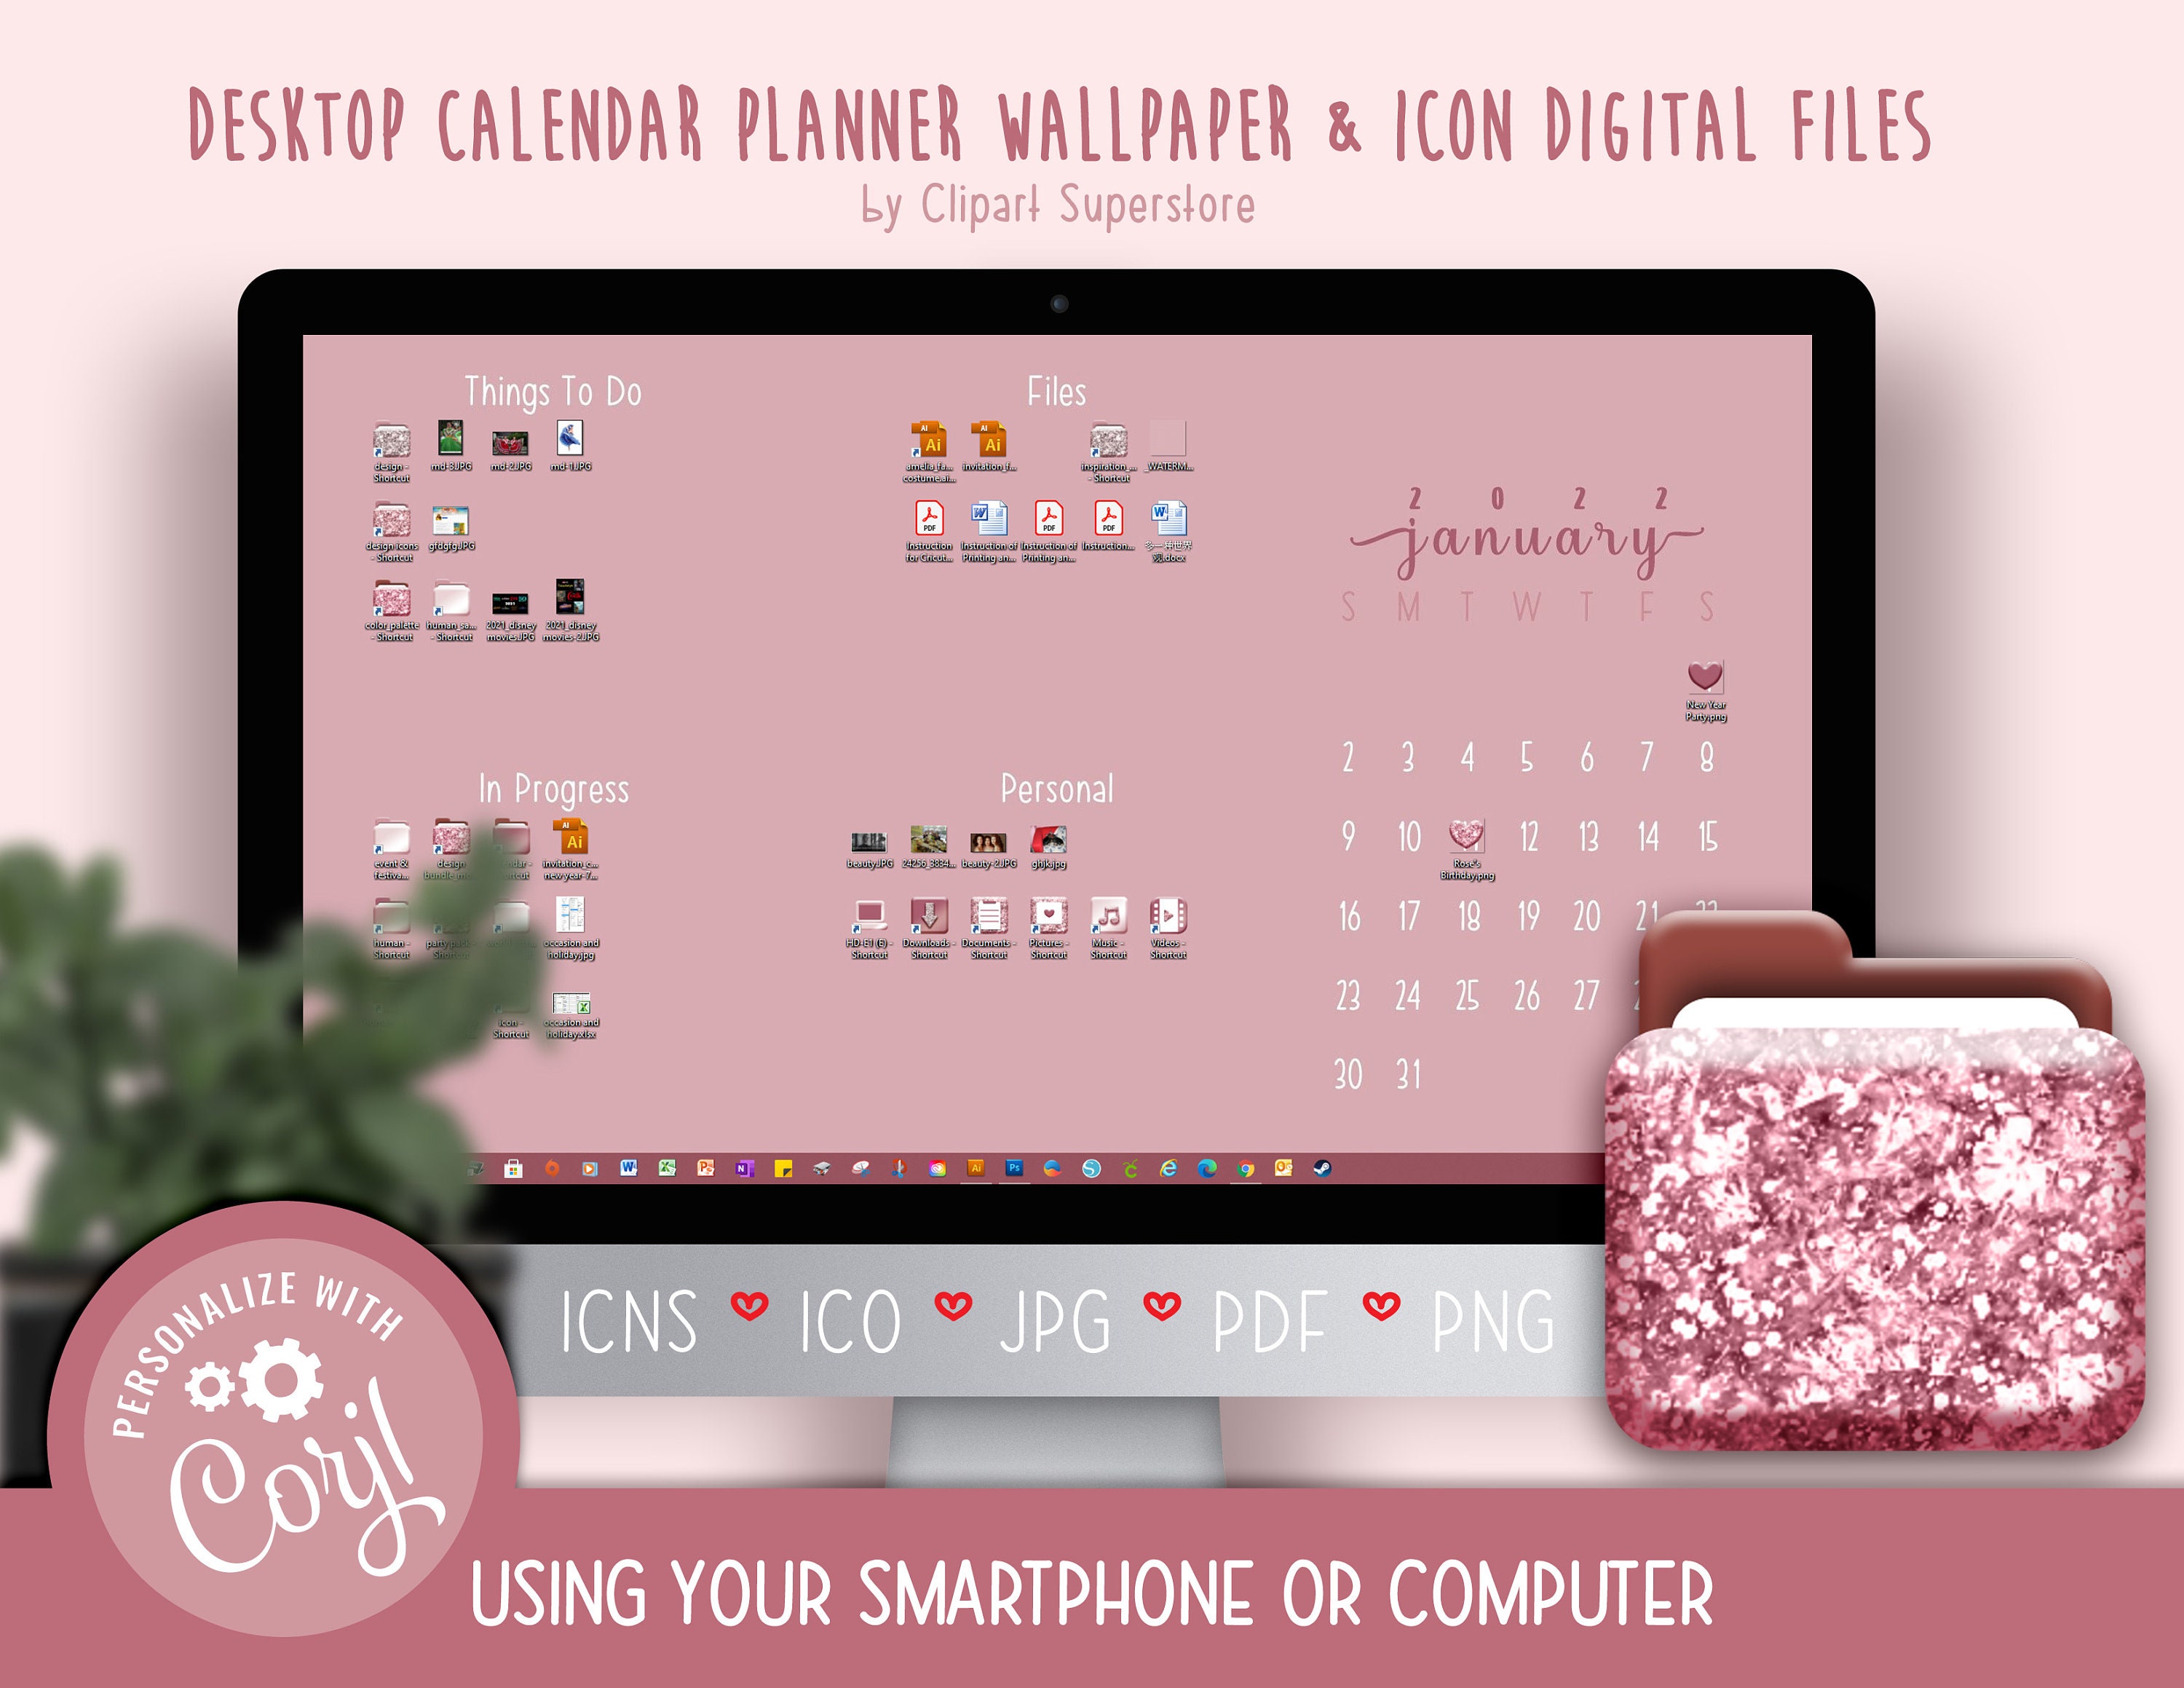 Desktop Wallpaper 2022 Calendar 2021 2022 Desktop Calendar Wallpaper Organizer Planner And | Etsy Singapore